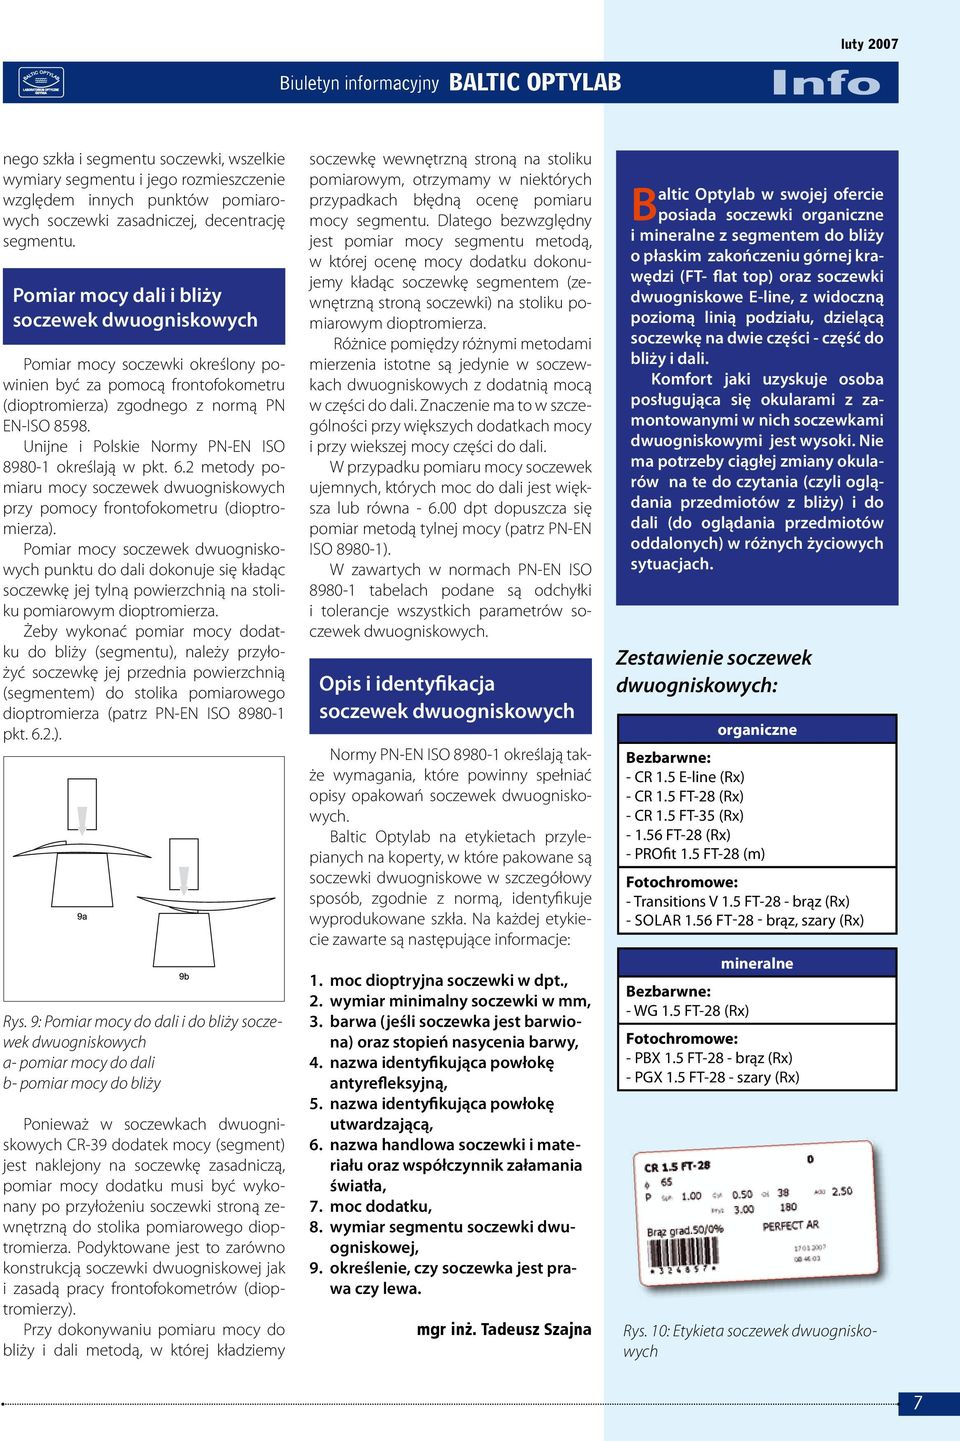 Unijne i Polskie Normy PN-EN ISO 8980-1 określają w pkt. 6.2 metody pomiaru mocy soczewek dwuogniskowych przy pomocy frontofokometru (dioptromierza).